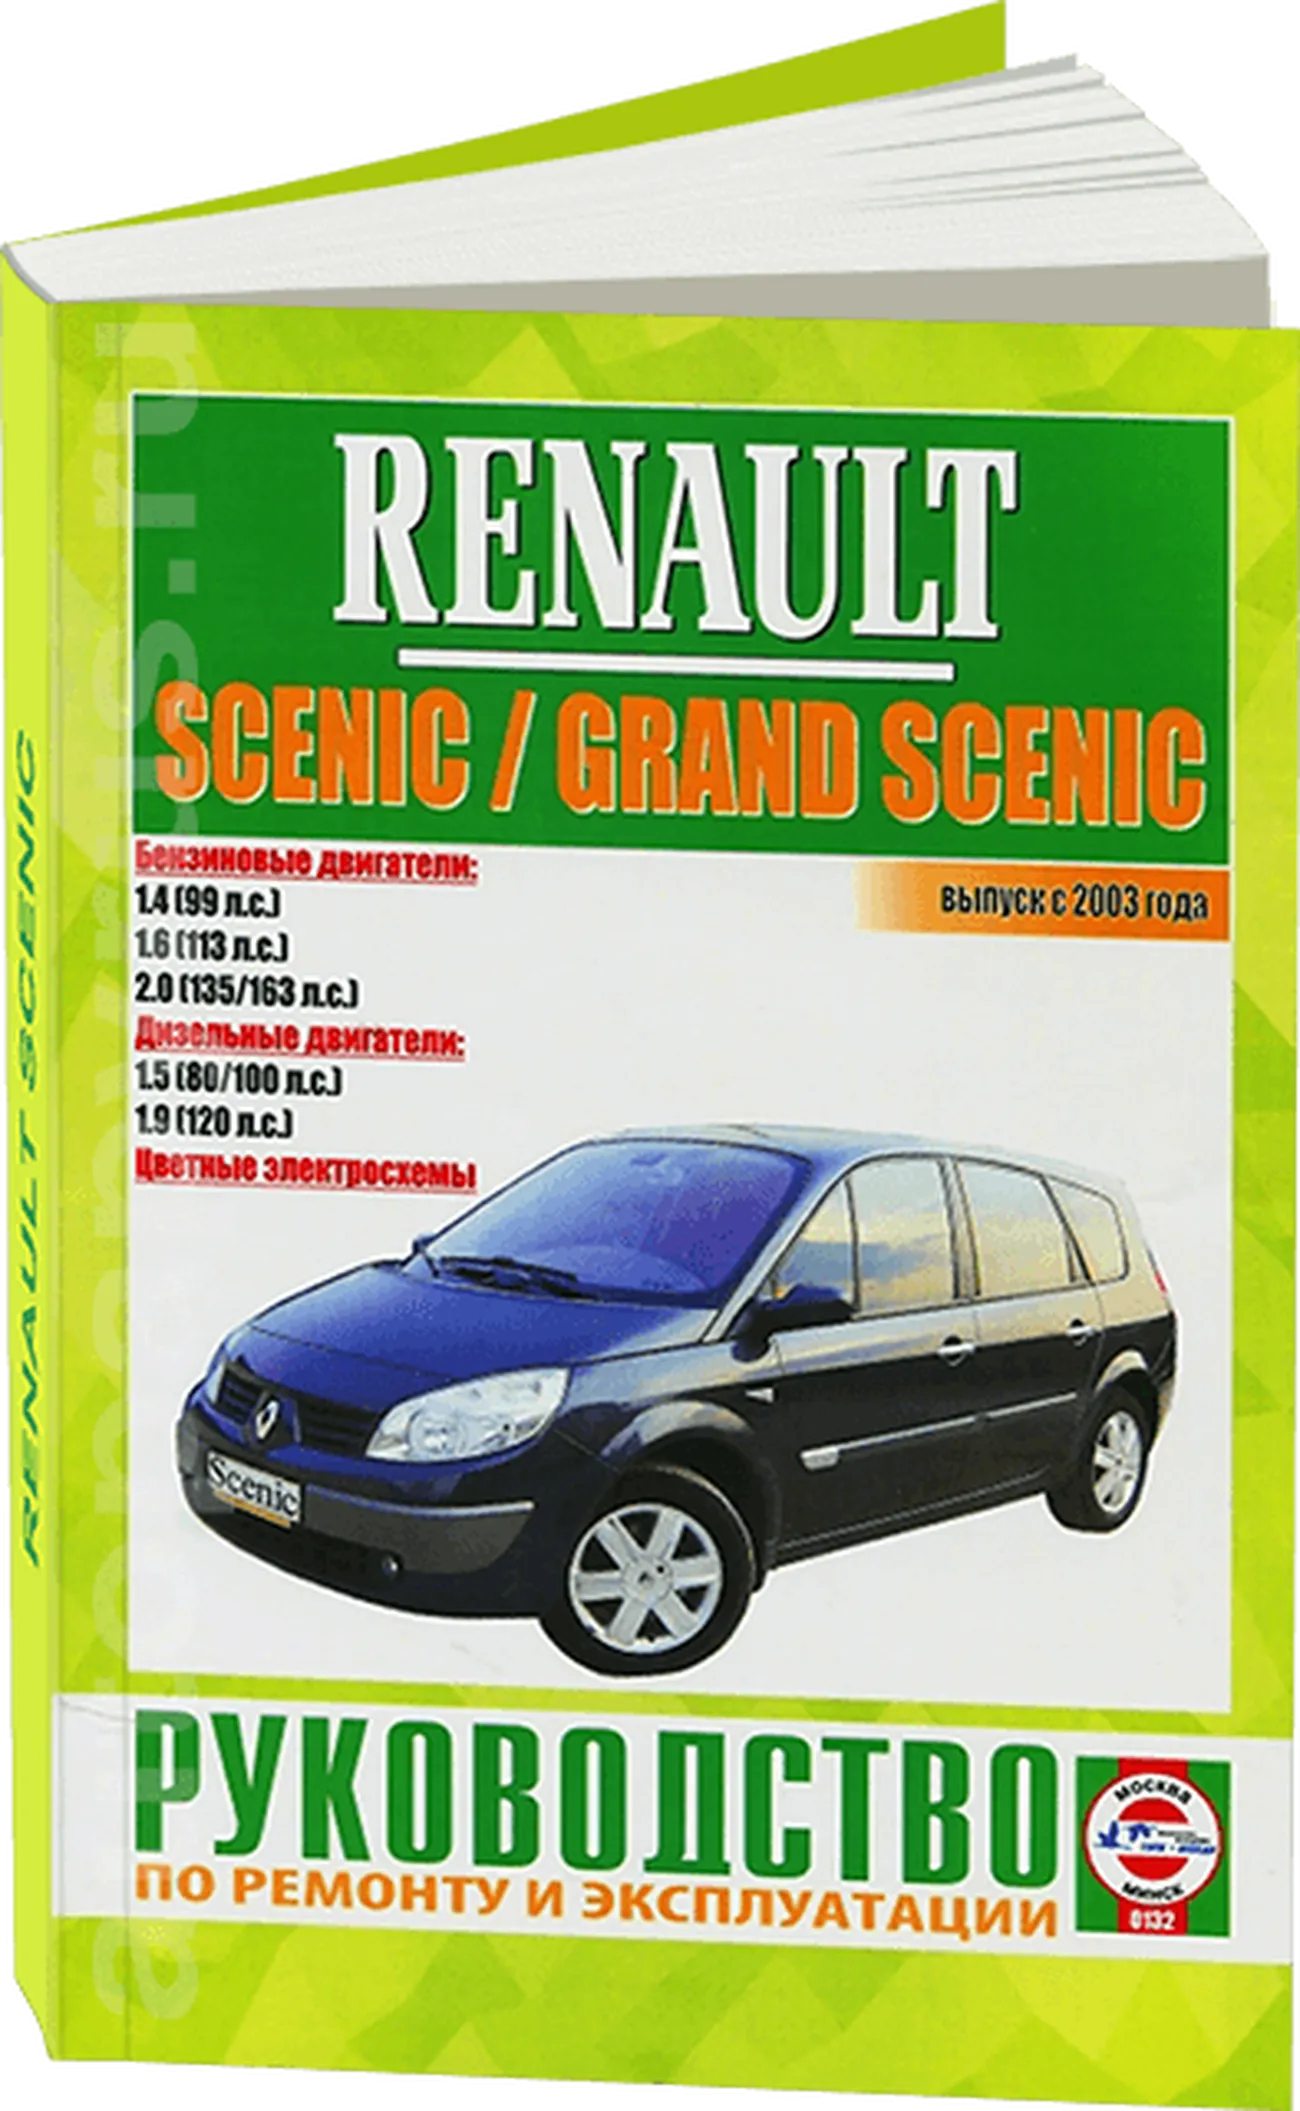 Книга: RENAULT SCENIC / GRAND SCENIC  (б , д) с 2003 г.в., рем., экспл., то | Чижовка